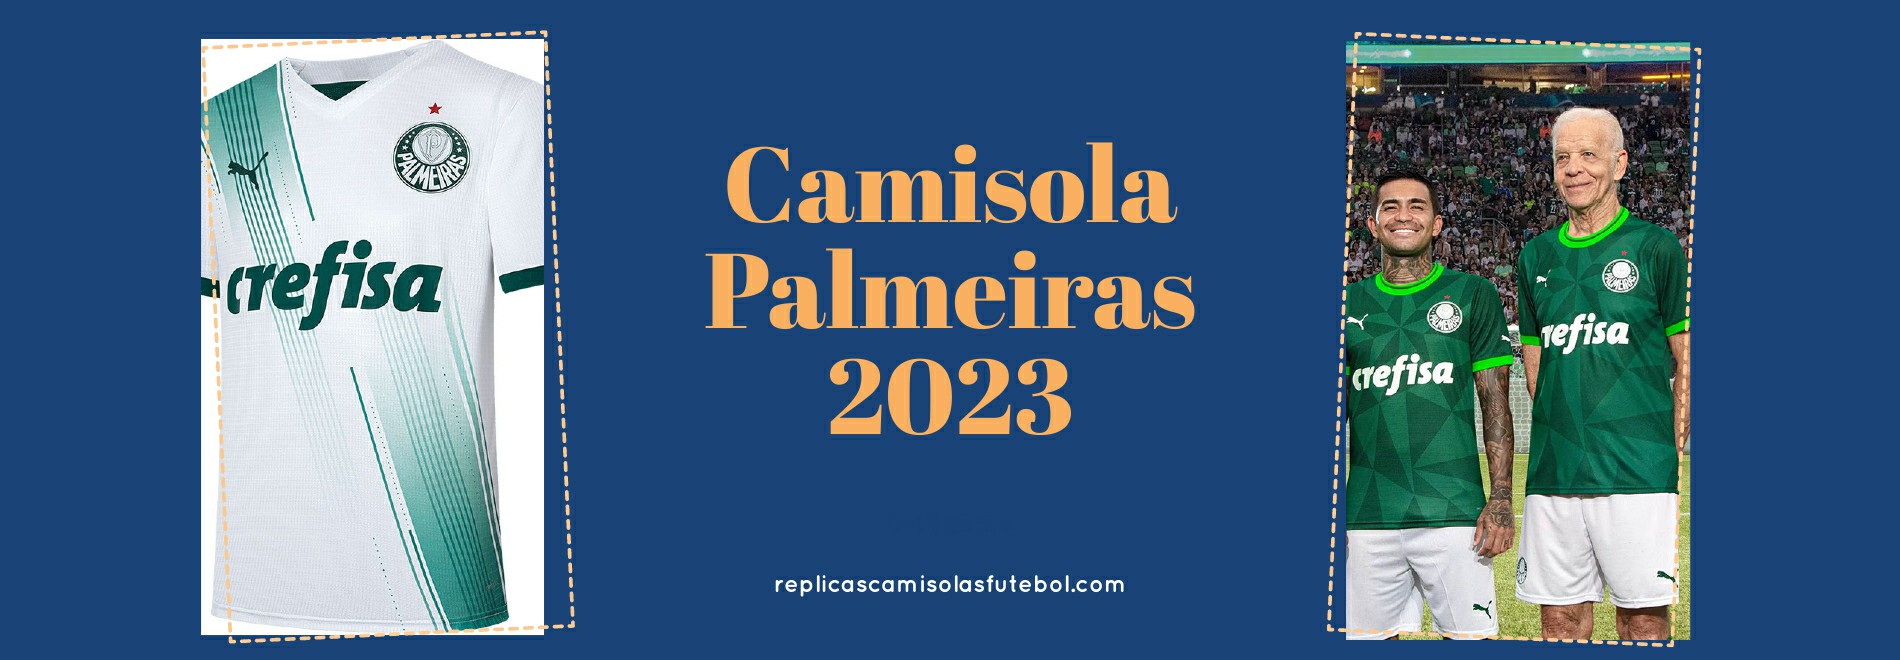 Camisola Palmeiras 2023-2024